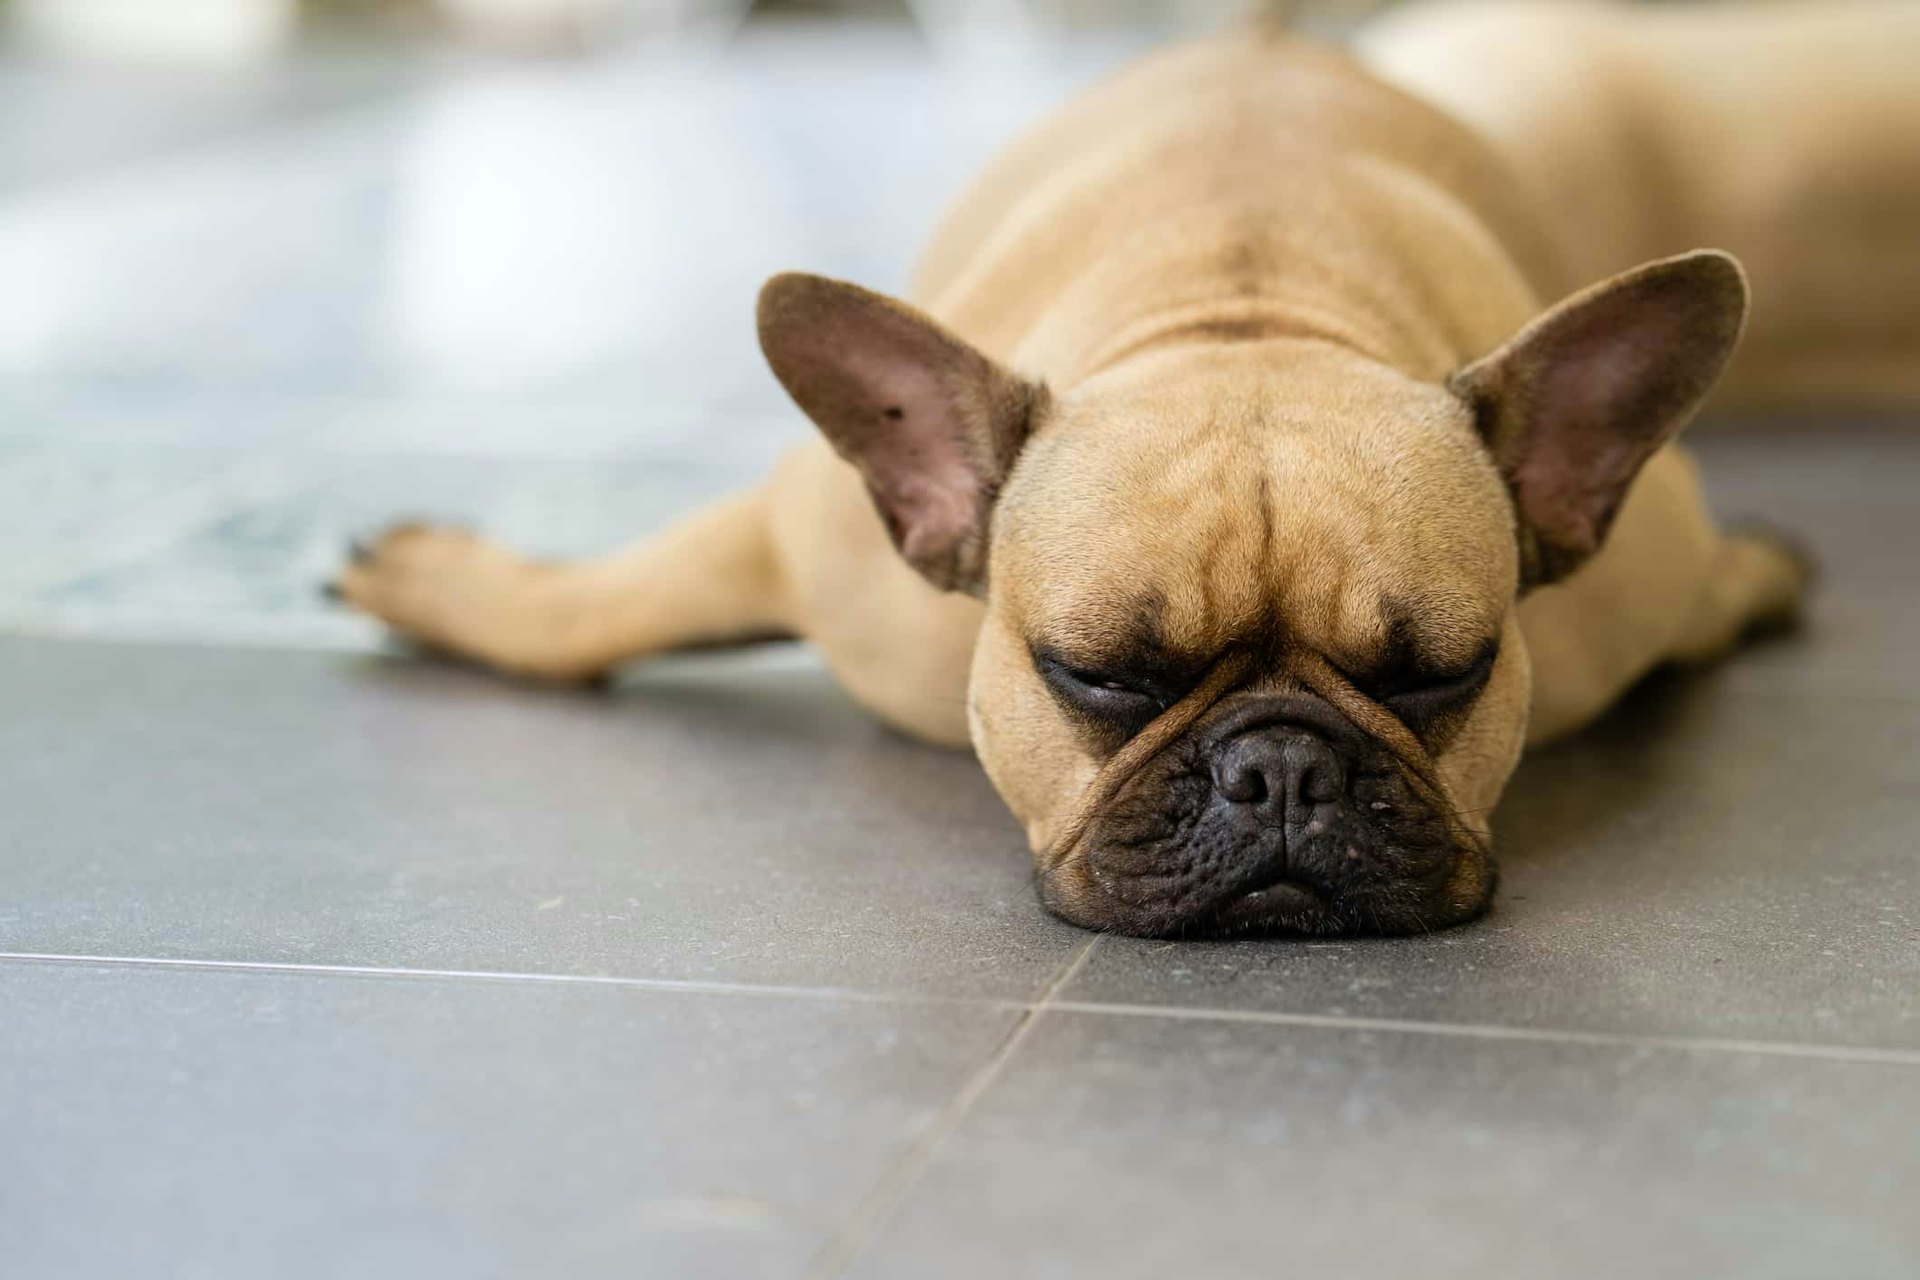 Sleepy french bulldog lying on tiled floor outdoor.